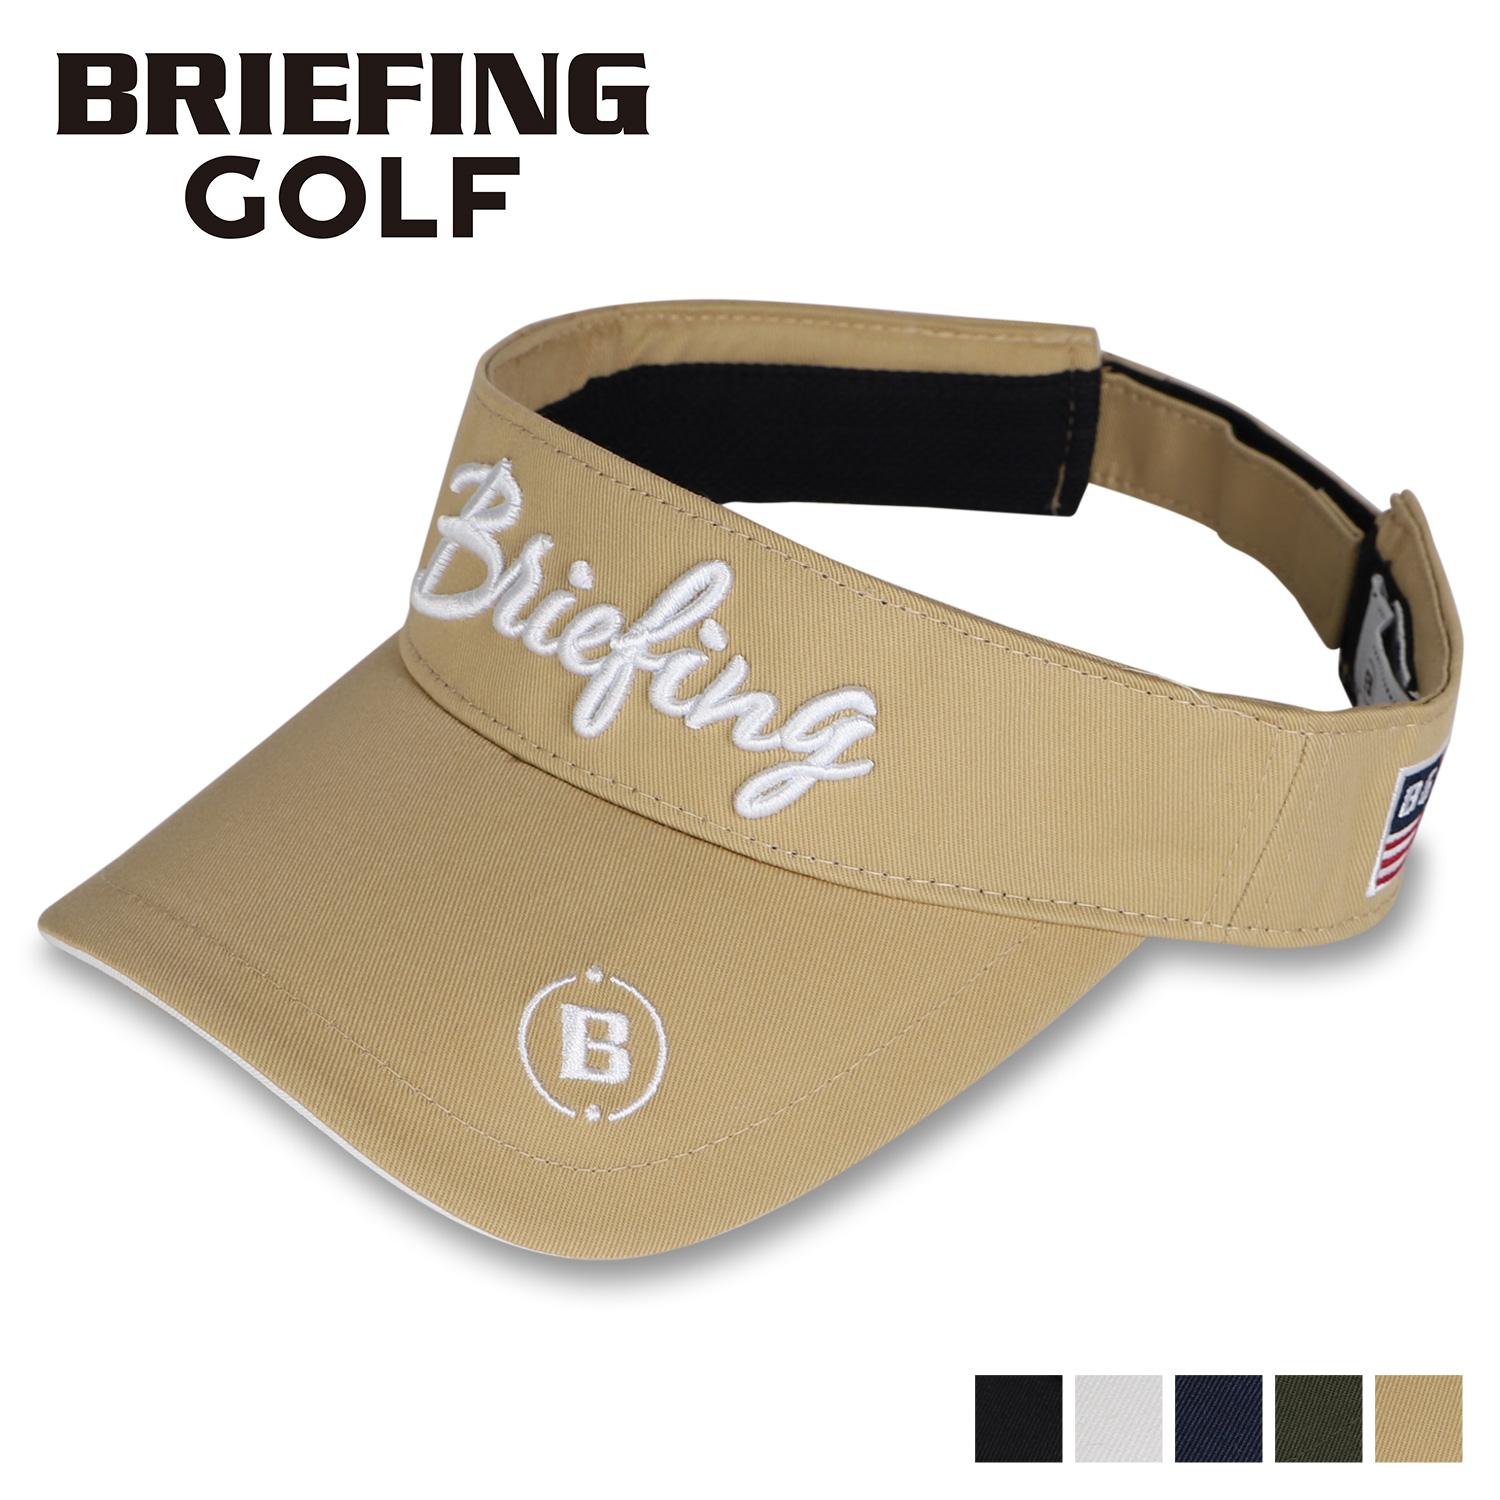 ブリーフィング ゴルフ BRIEFING GOLF サンバイザー キャップ 帽子 ベーシック レディース WOMENS BASIC VISOR ブラック ホワイト ネイビー ベージュ カーキ 黒 白 BRG223W59